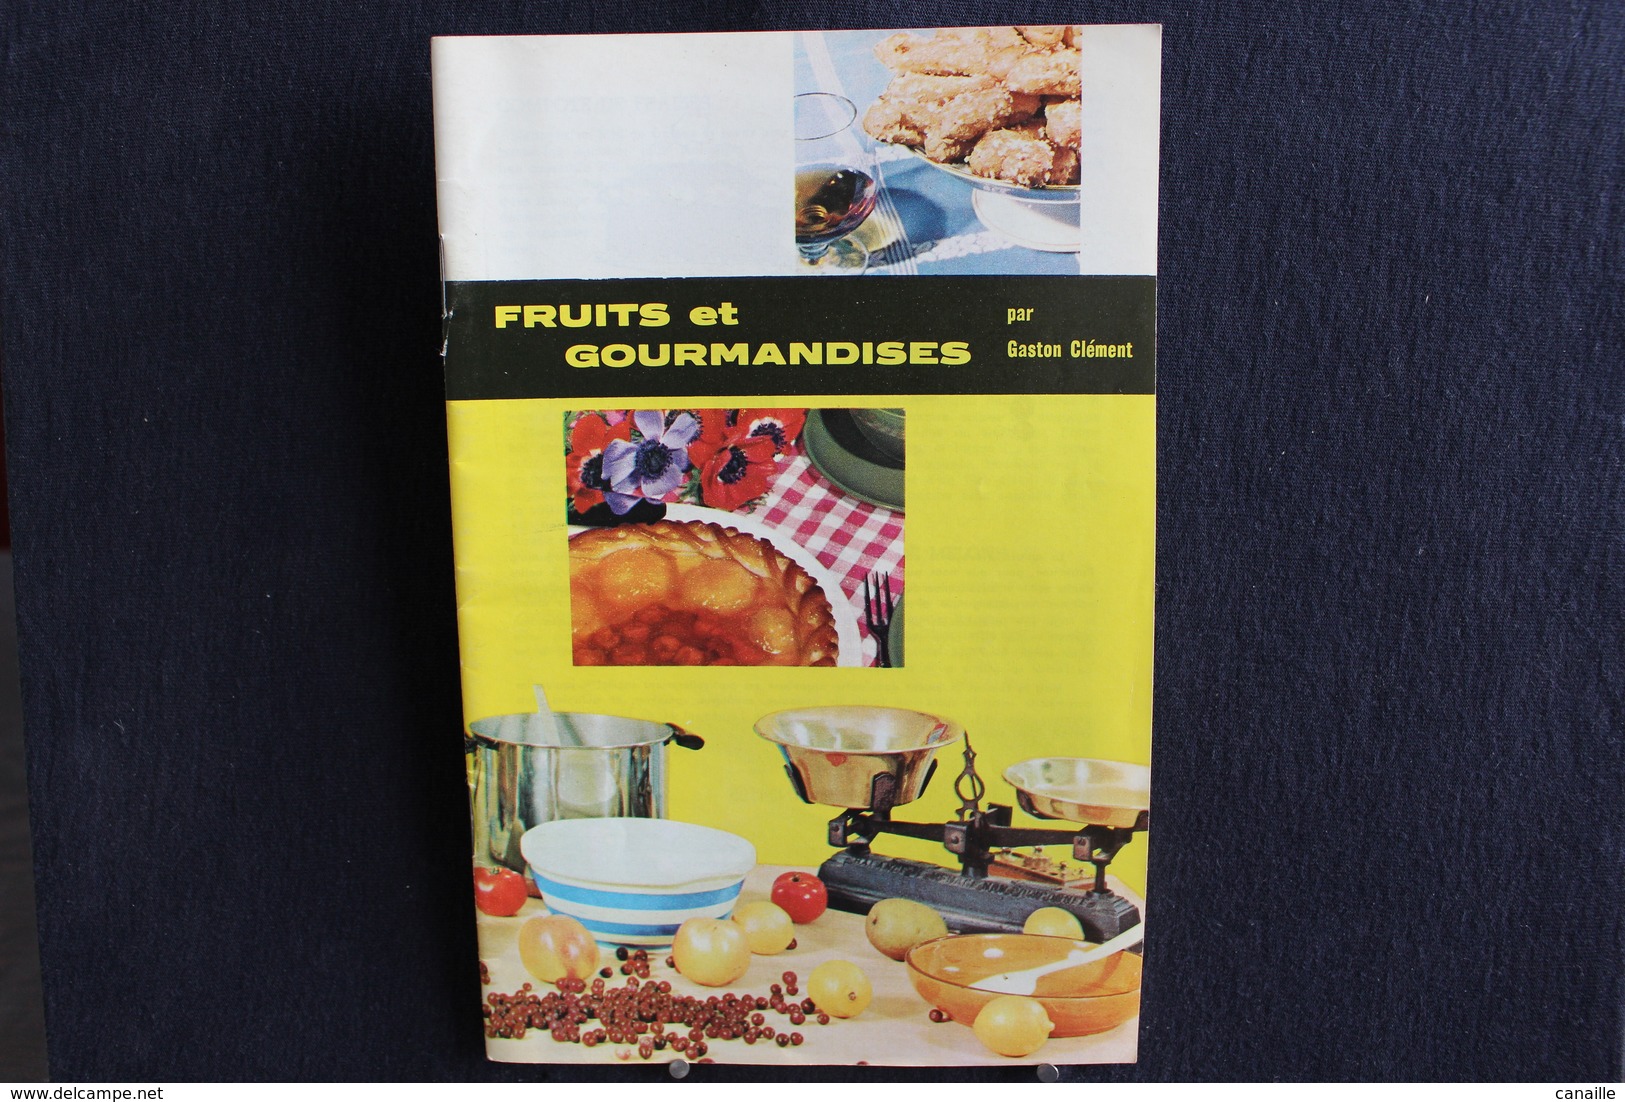 Publicités ( 5 )  - Livret De Cuisine - Par Gaston Clément - Fruits Et Gourmandises  -  Forma 13x20 Cm 15 Page - Cucina & Vini